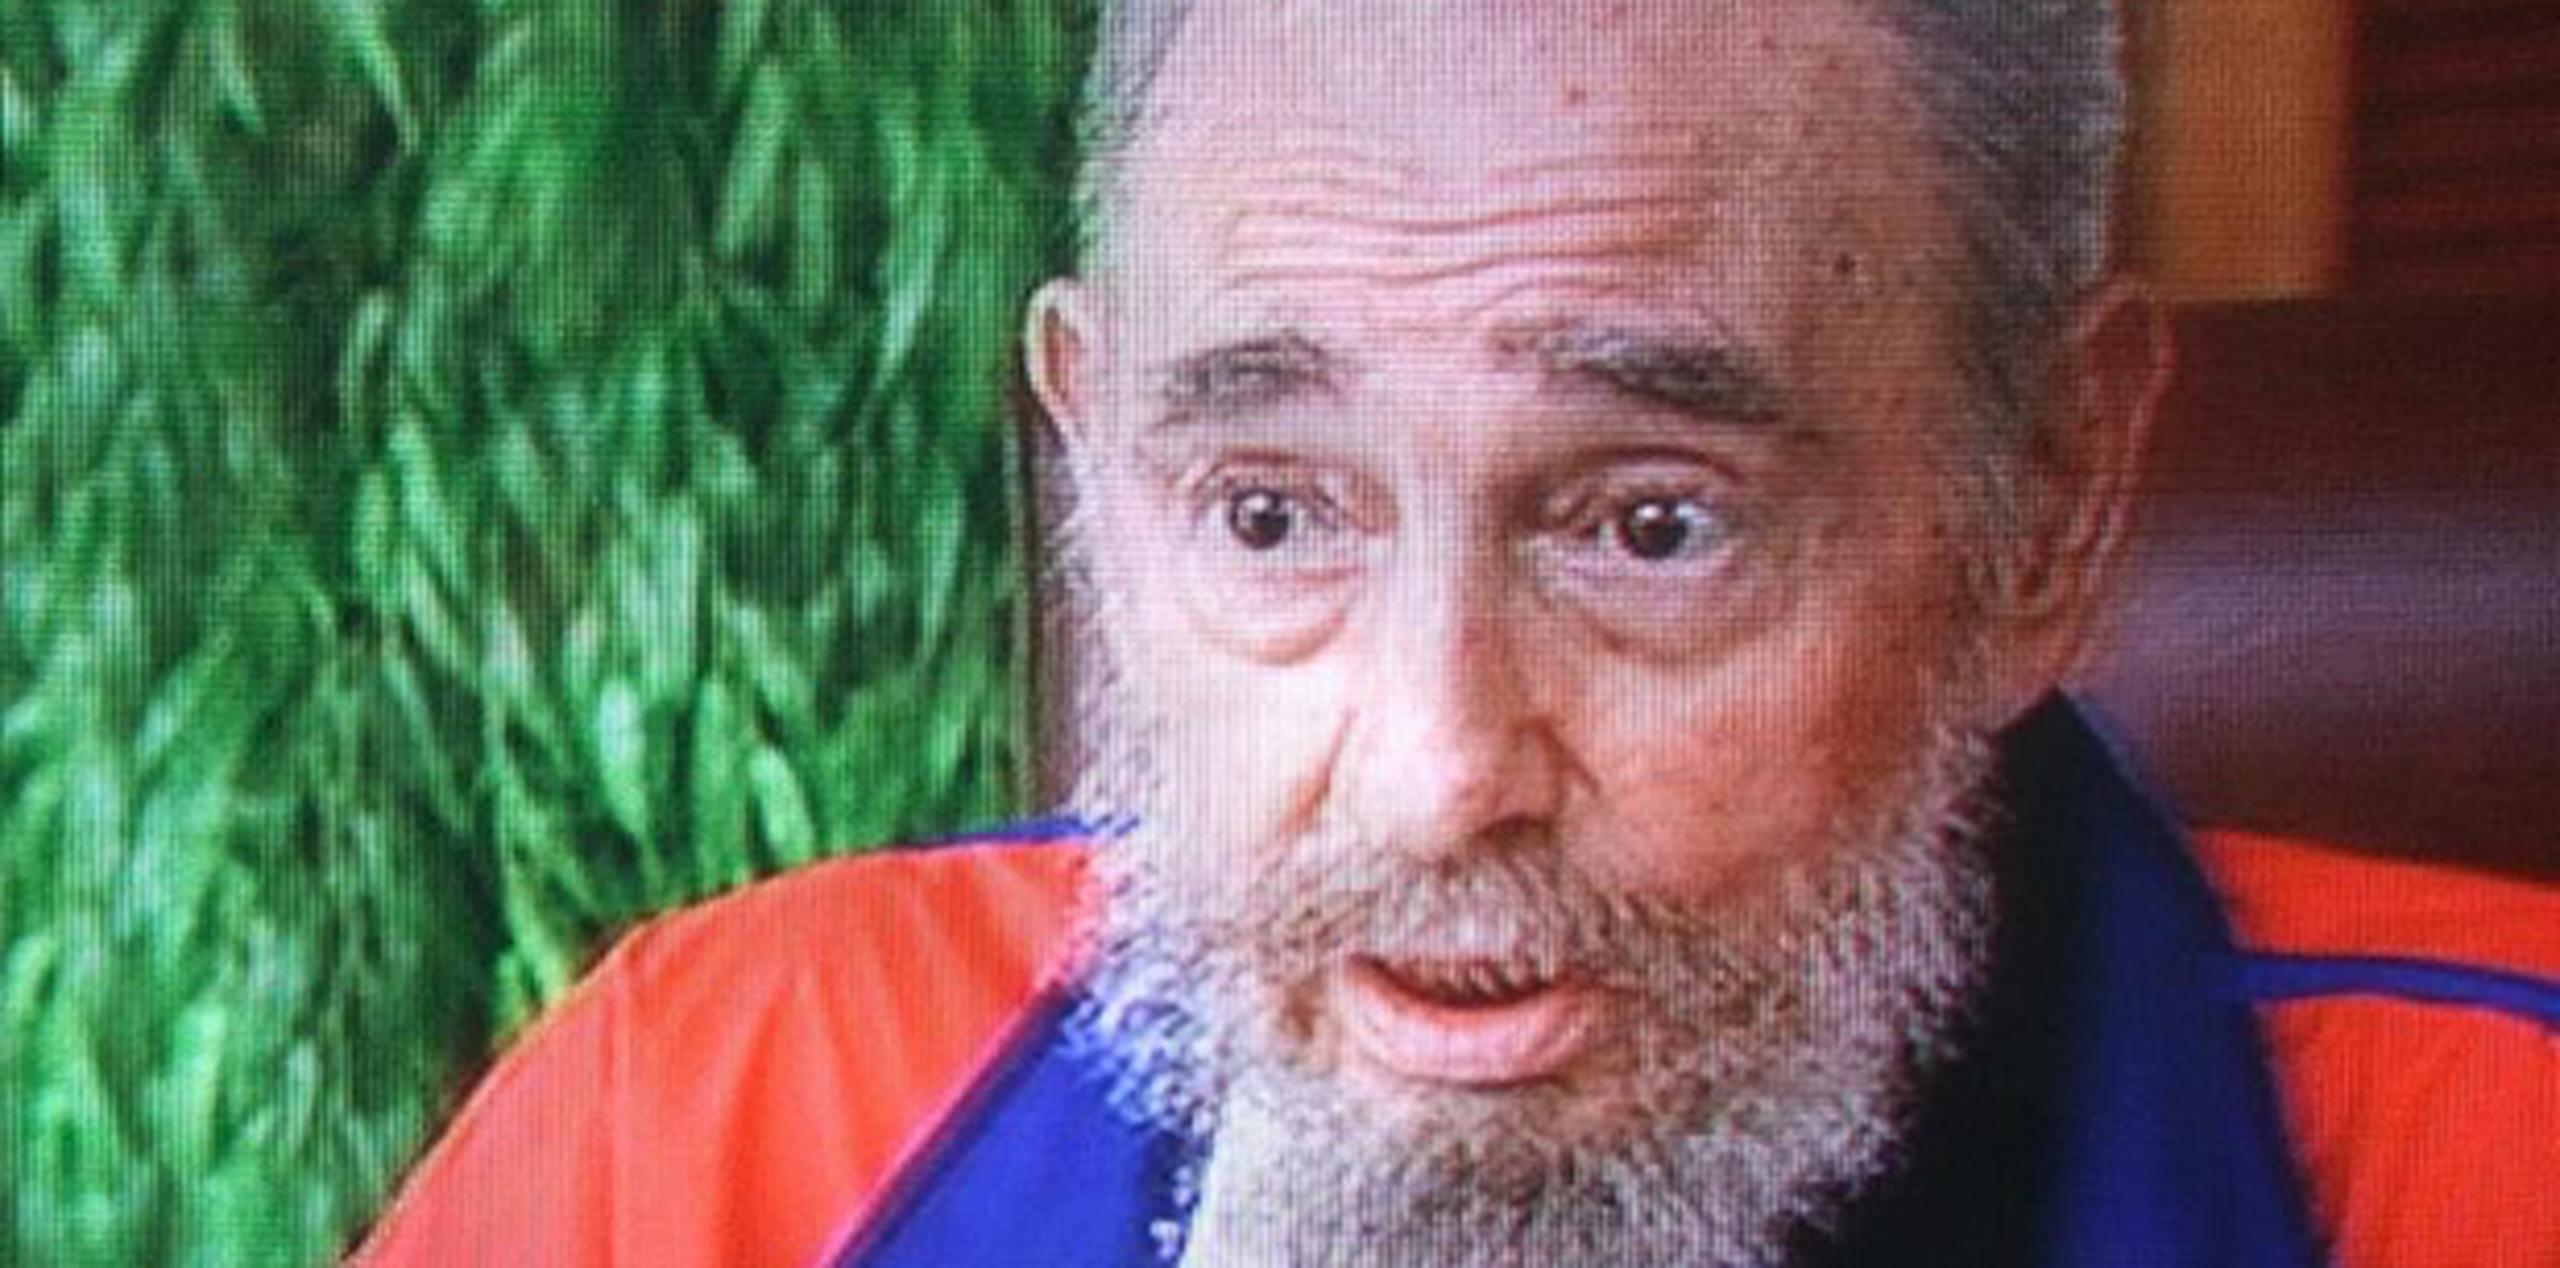 Fidel Castro, de 88 años y retirado del poder desde 2006 por una enfermedad, realizó su última aparición en público en enero de 2014. (Archivo)